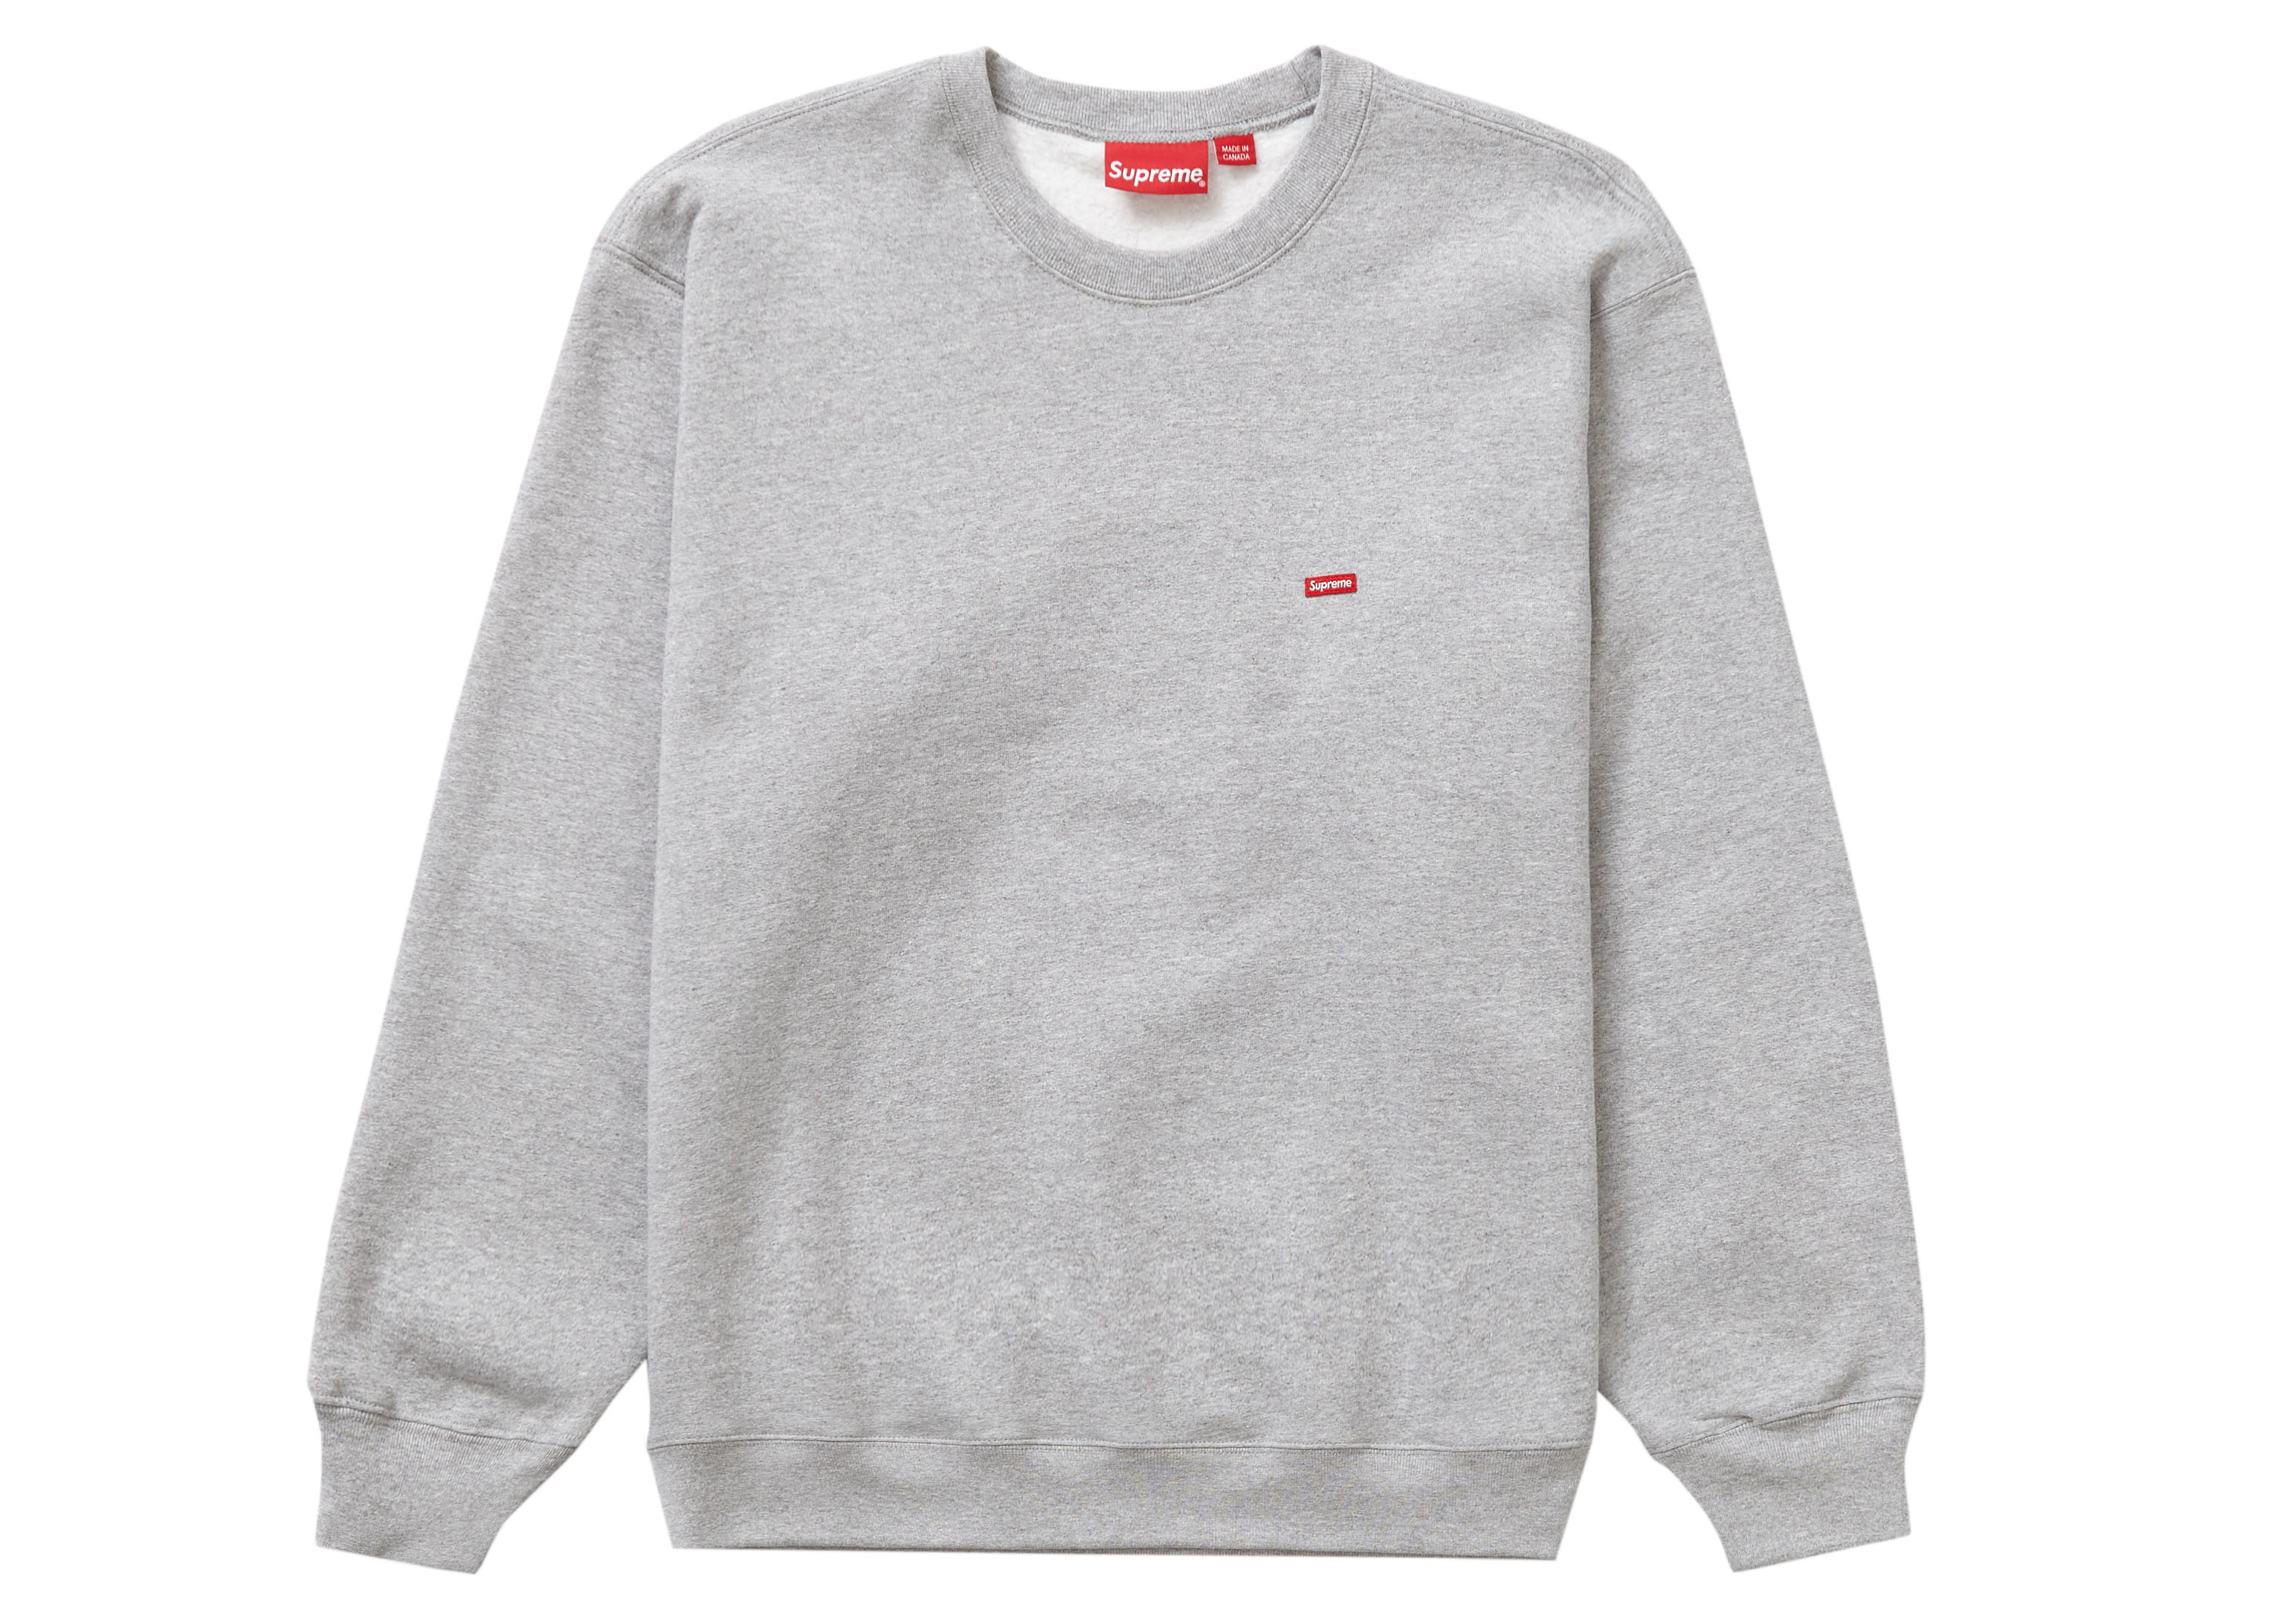 Streetwear - Supreme Tops/Sweatshirts - Release Date